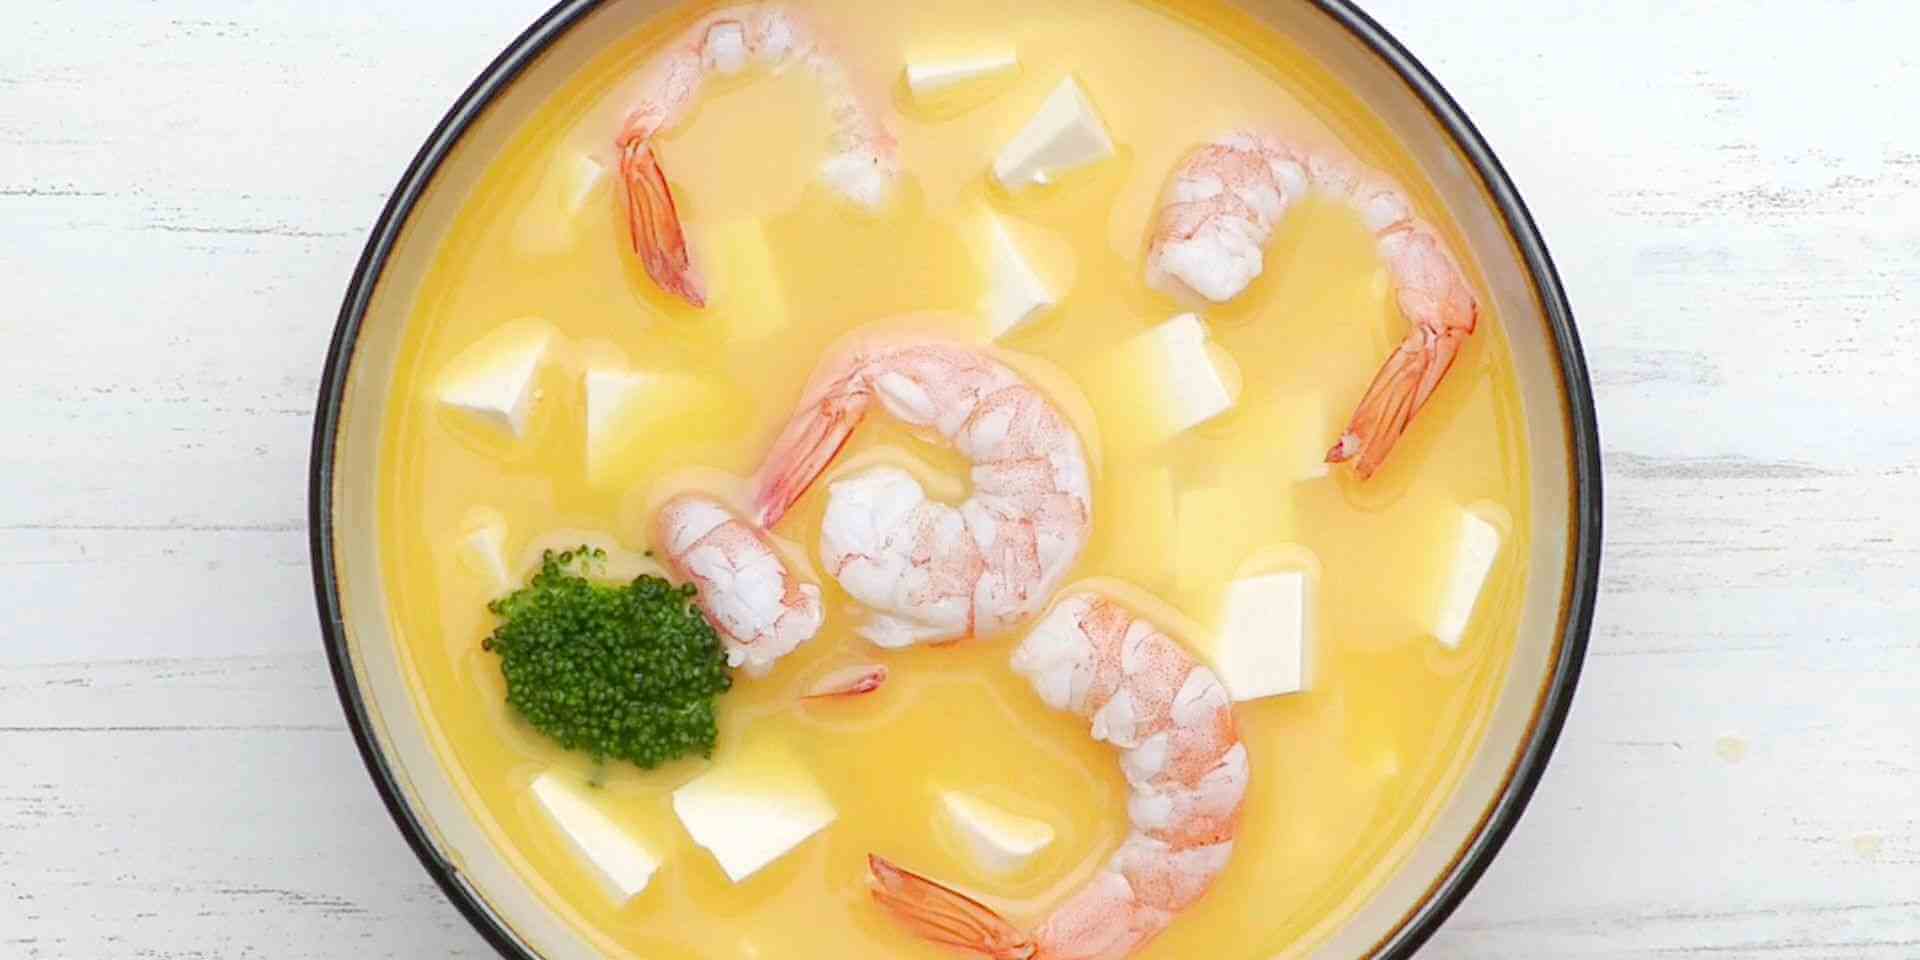 虾仁豆腐汤属于孕期营养食谱